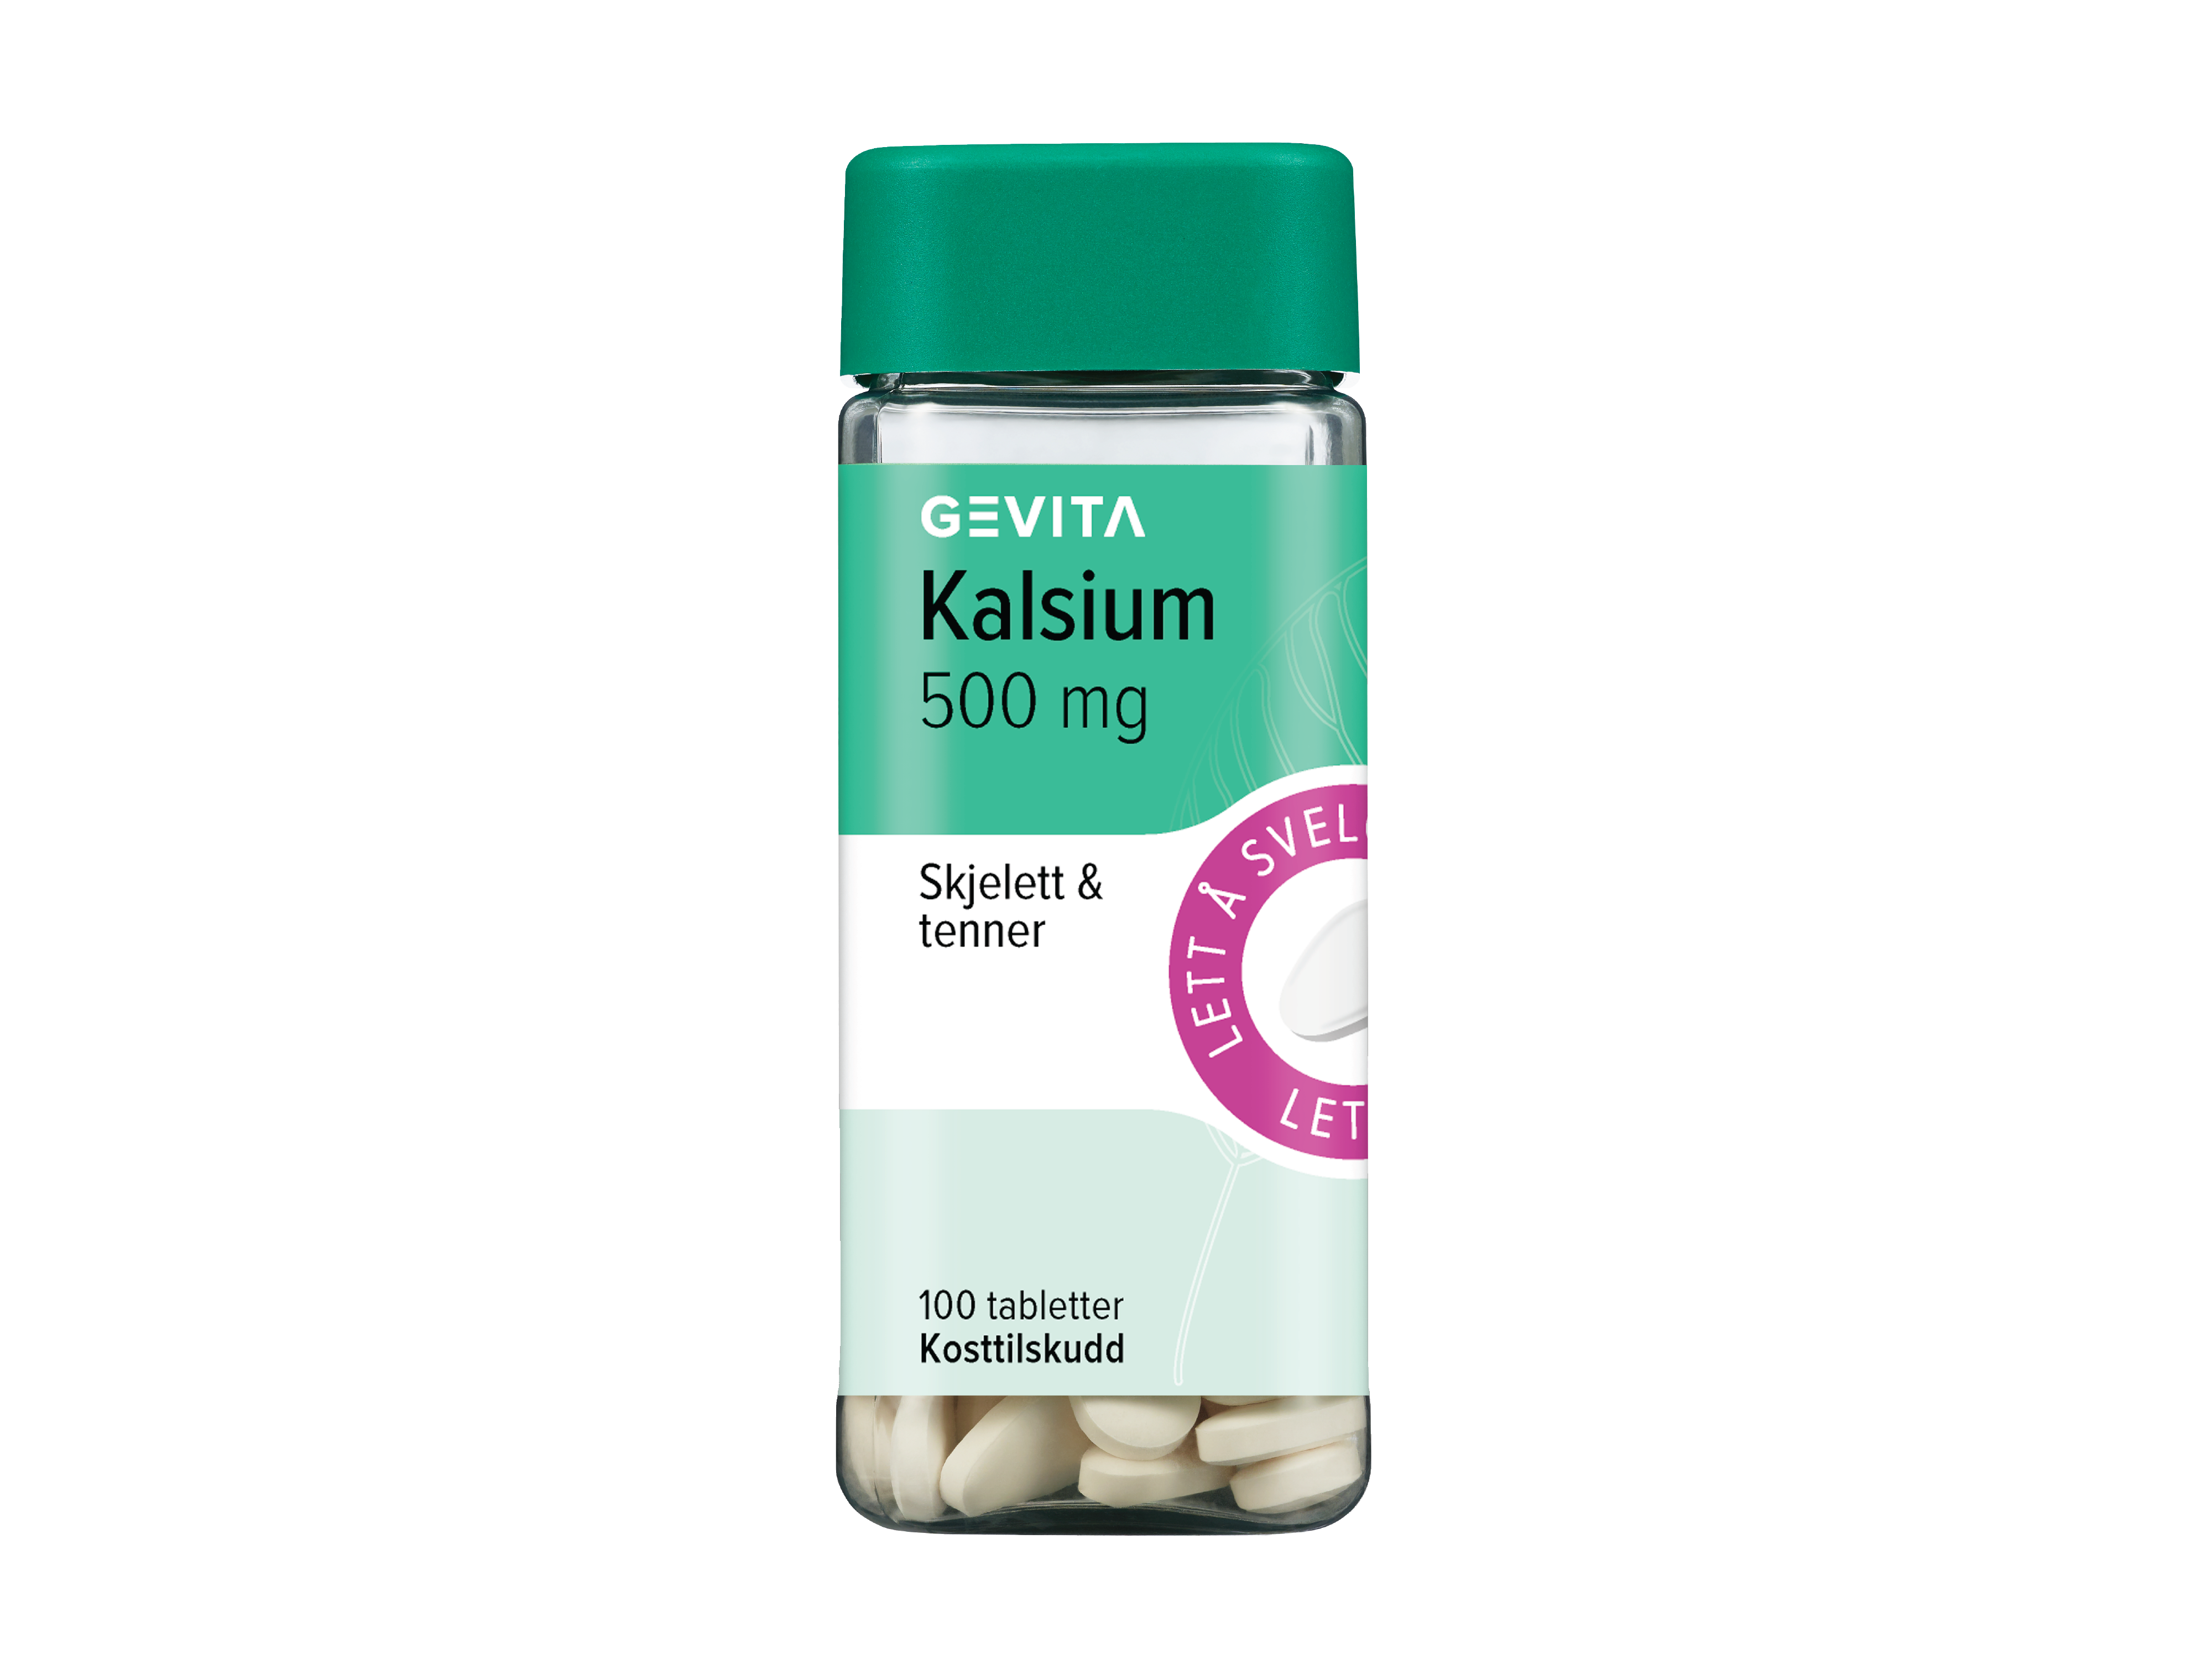 Gevita Kalsium 500 mg, 100 tabletter